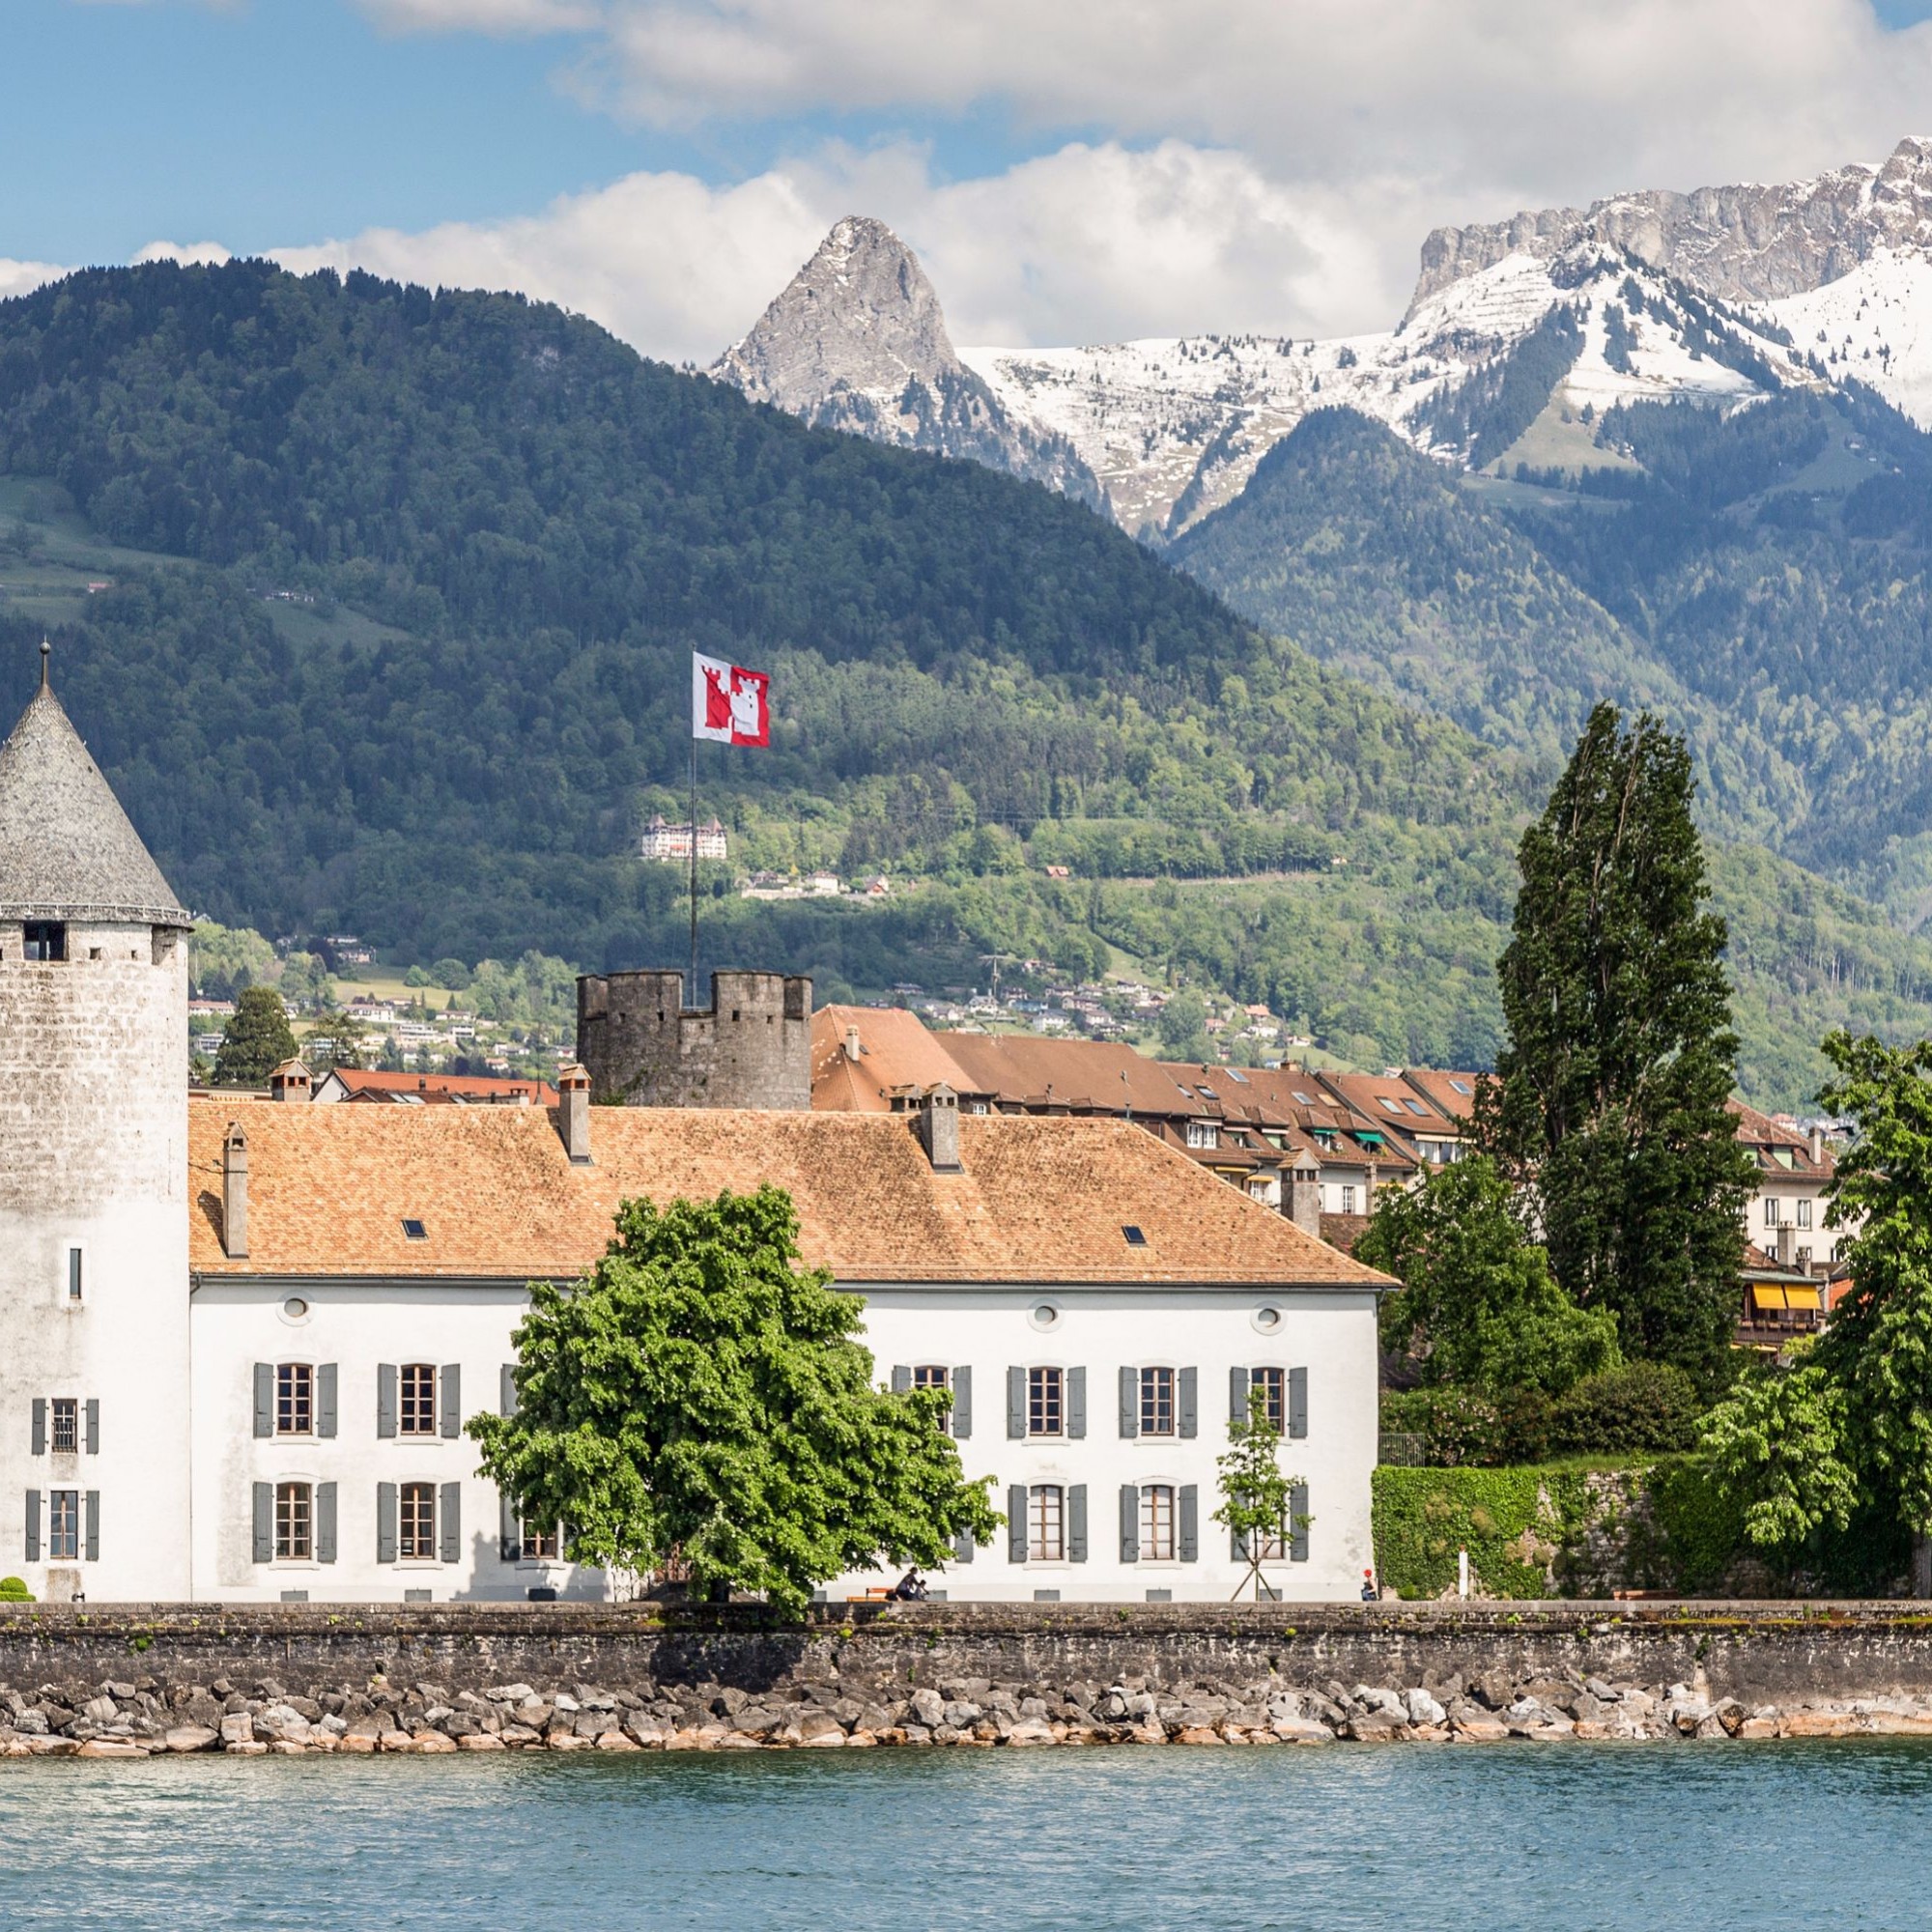 Das Schloss La-Tour-de-Peilz liegt im gleichnamigen Ort am östlichen Ufer des Genfersees.